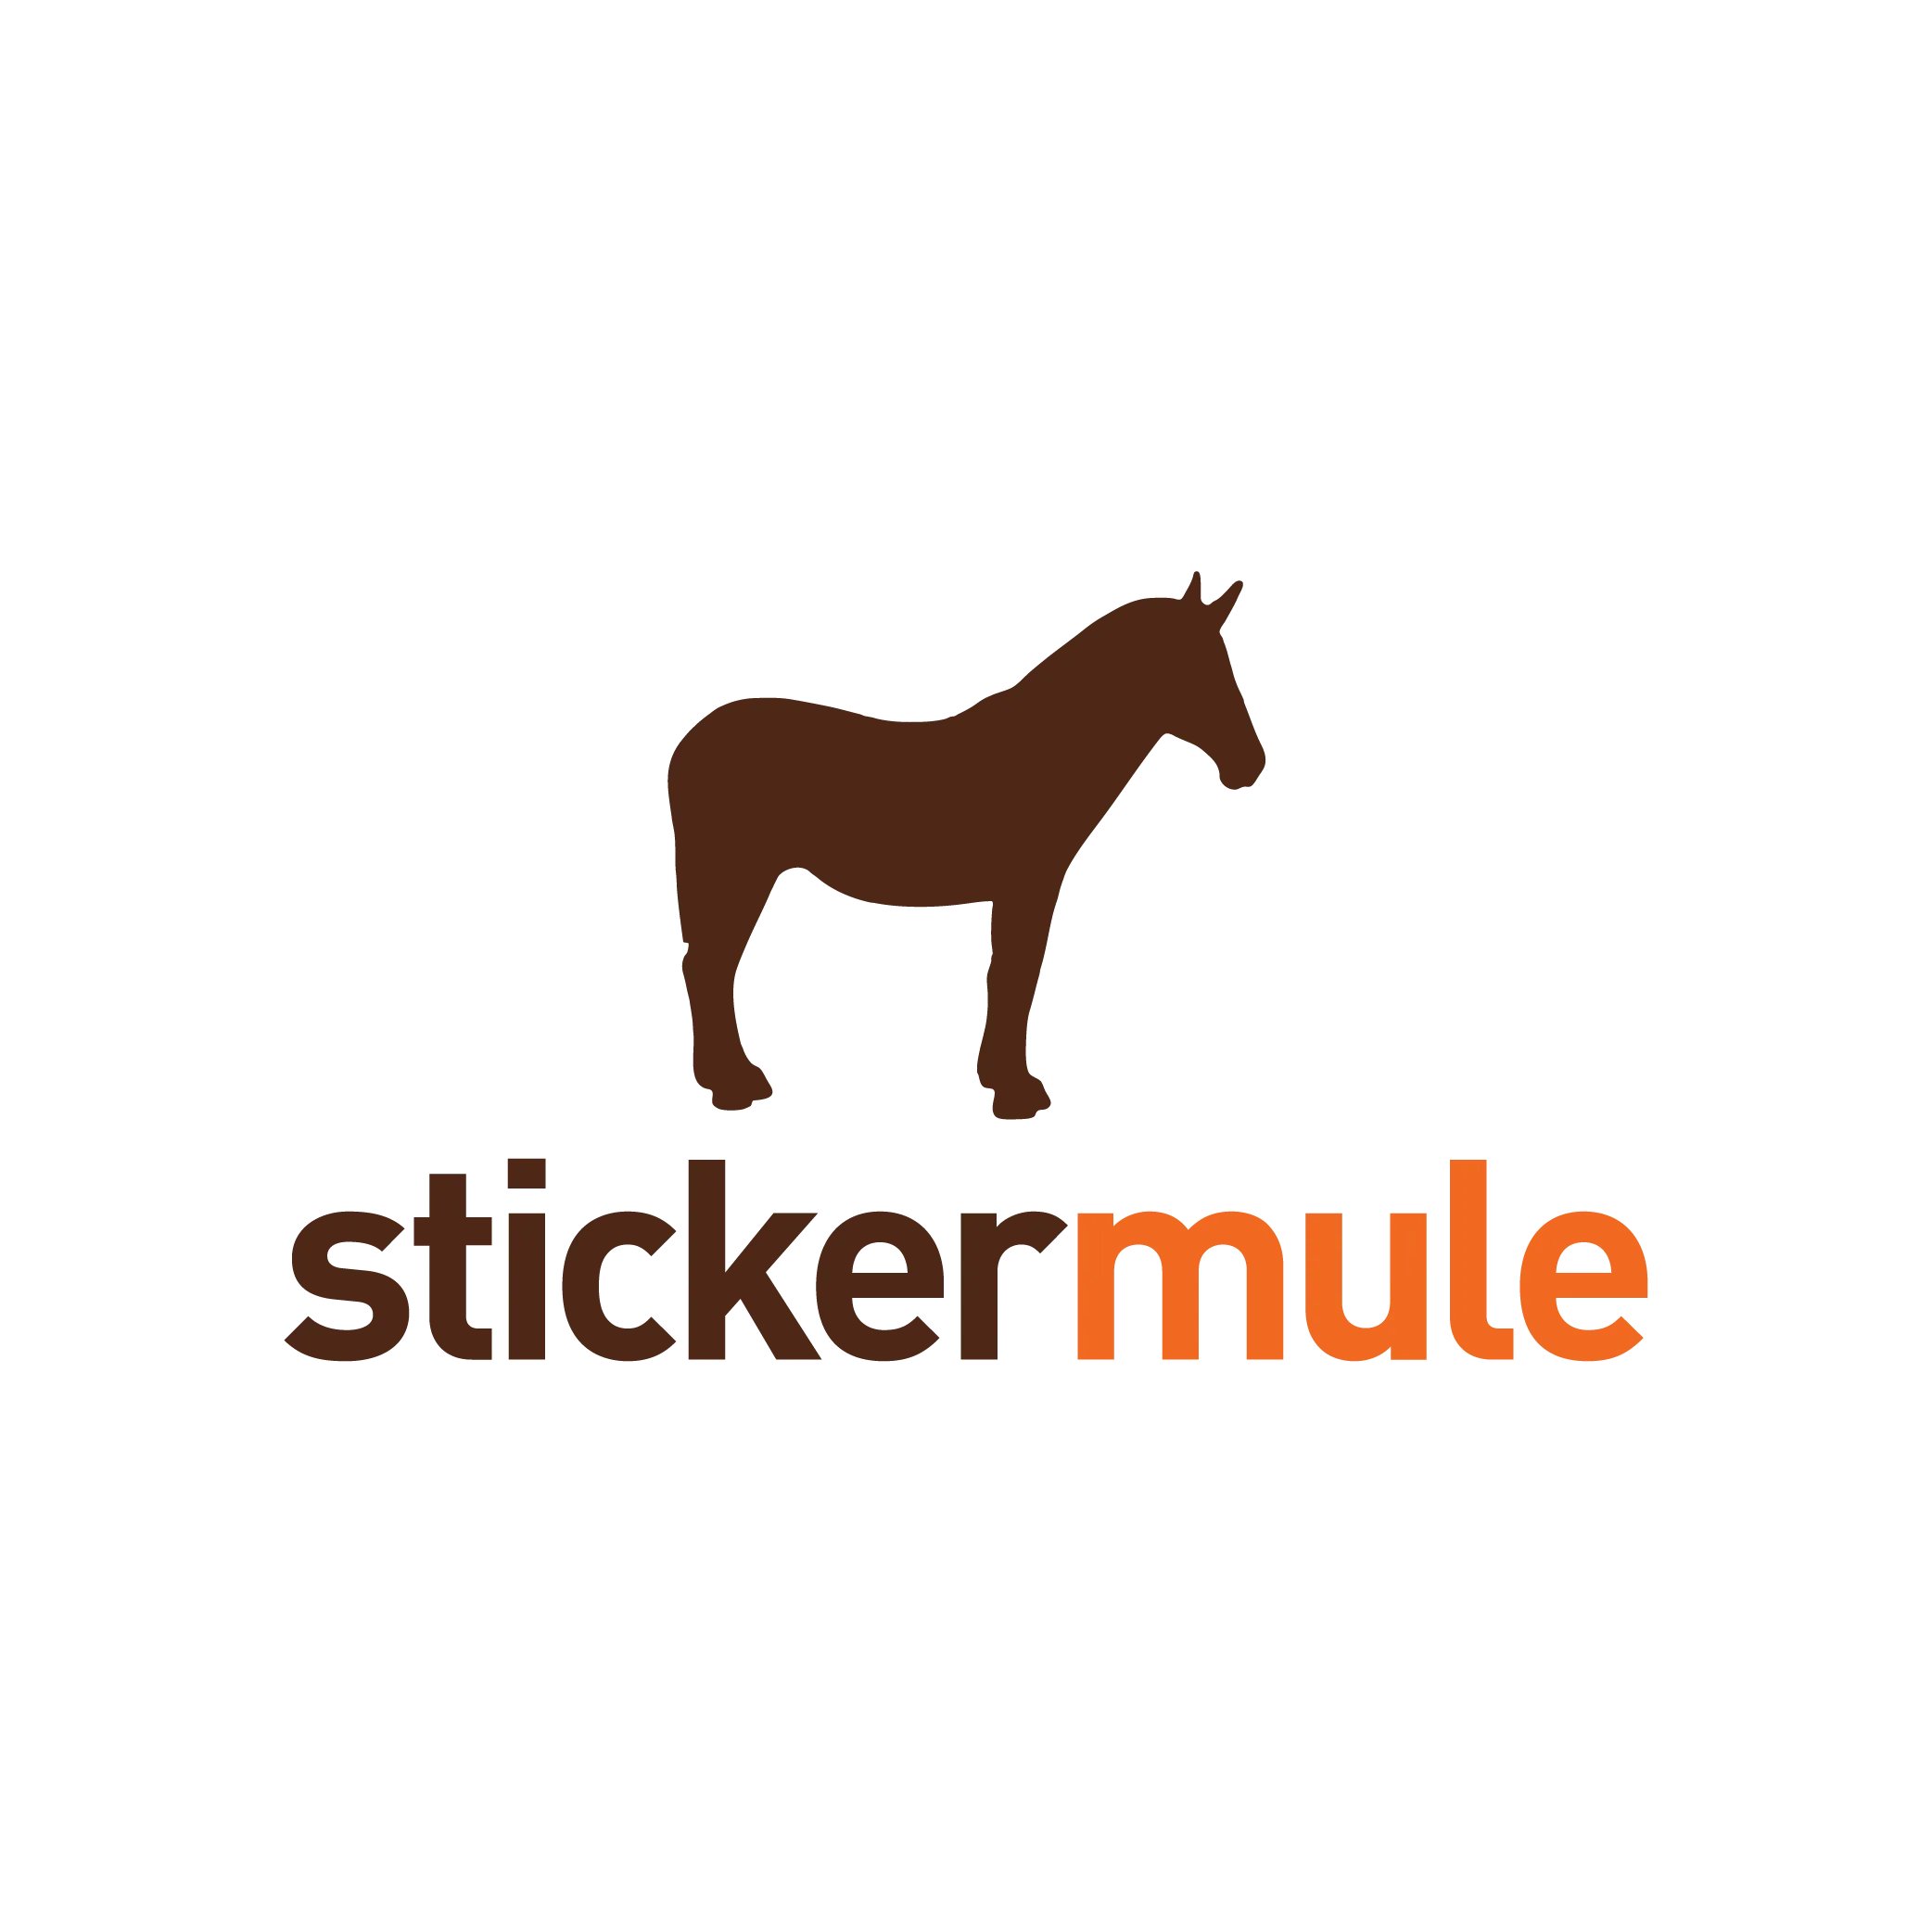 Sticker mule logo